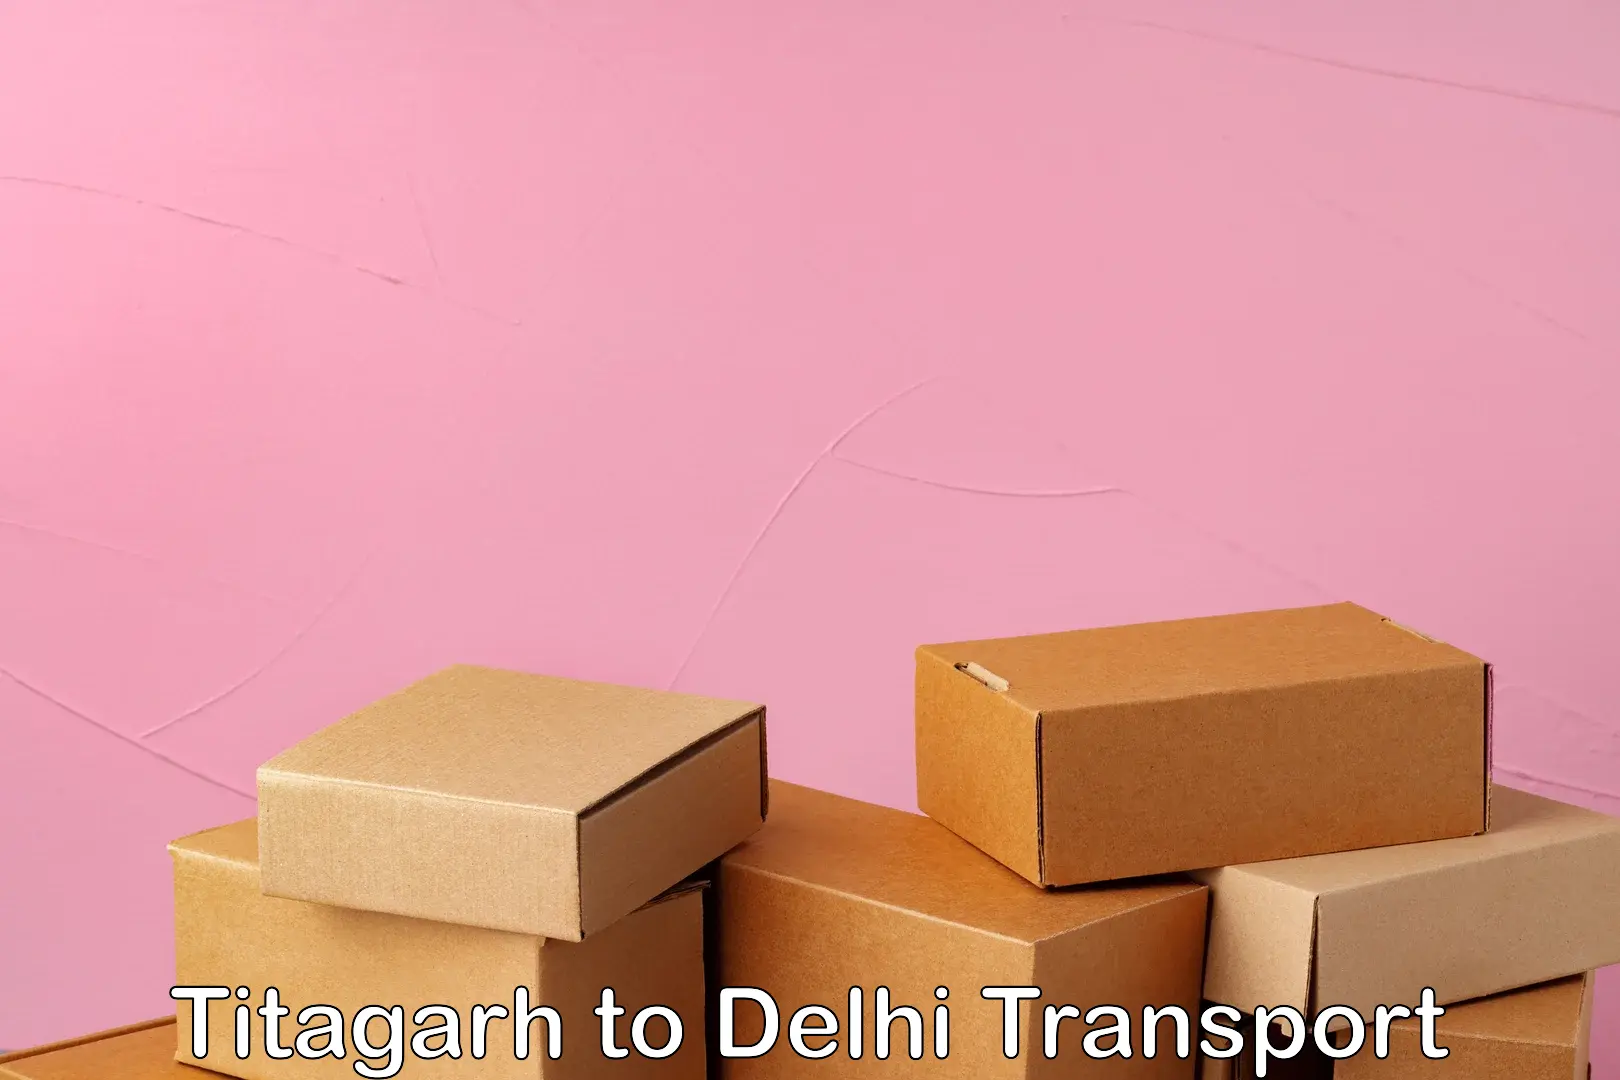 Container transportation services Titagarh to Delhi